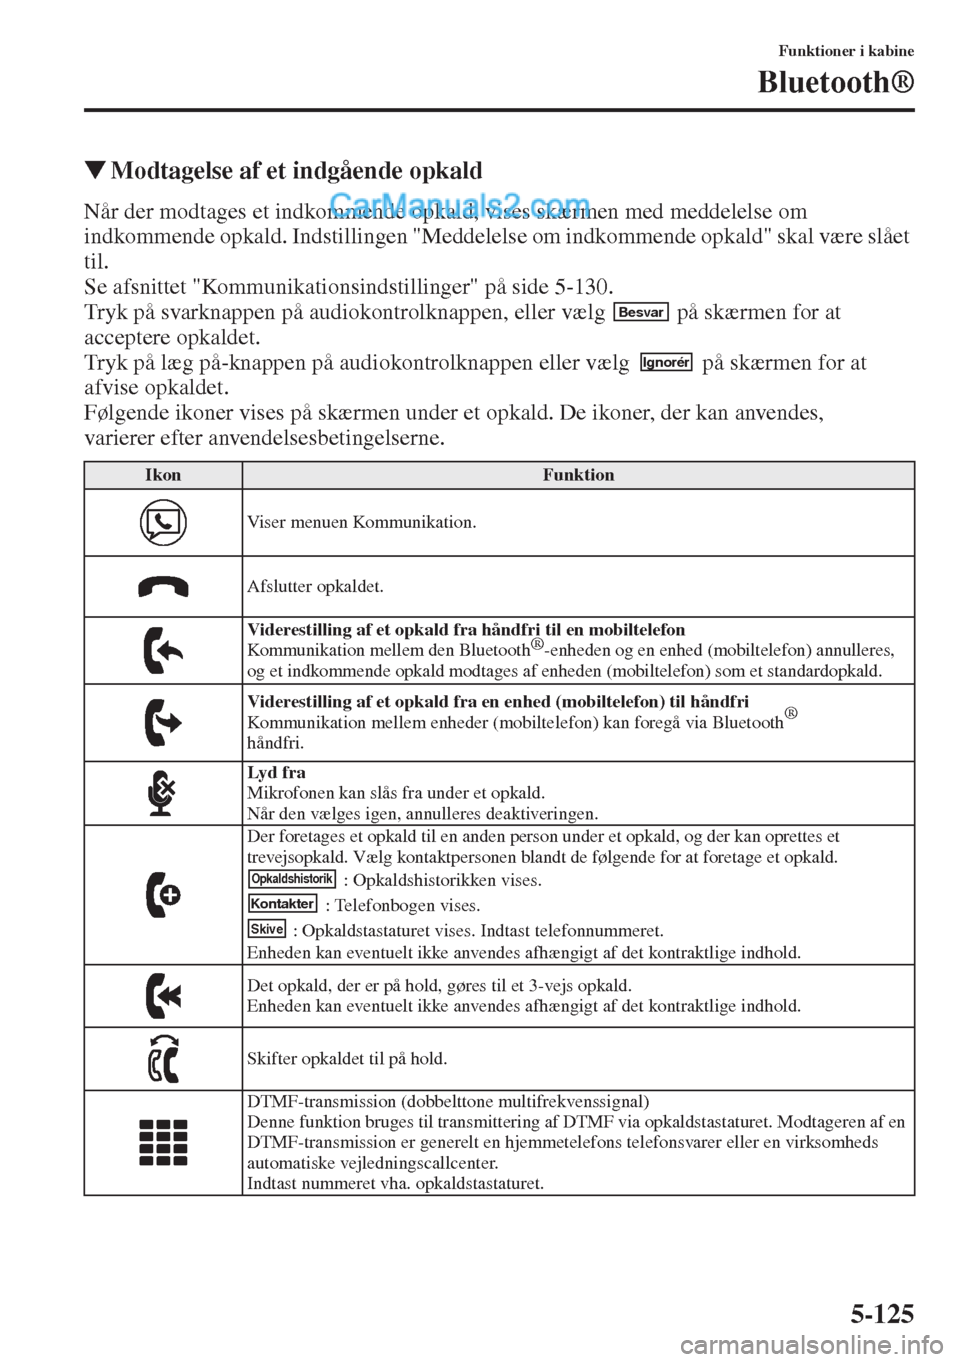 MAZDA MODEL CX-5 2015  Instruktionsbog (in Danish) 5-125
Funktioner i kabine
Bluetooth®
�WModtagelse af et indgående opkald
Når der modtages et indkommende opkald, vises skærmen med meddelelse om 
indkommende opkald. Indstillingen "Meddelelse om i